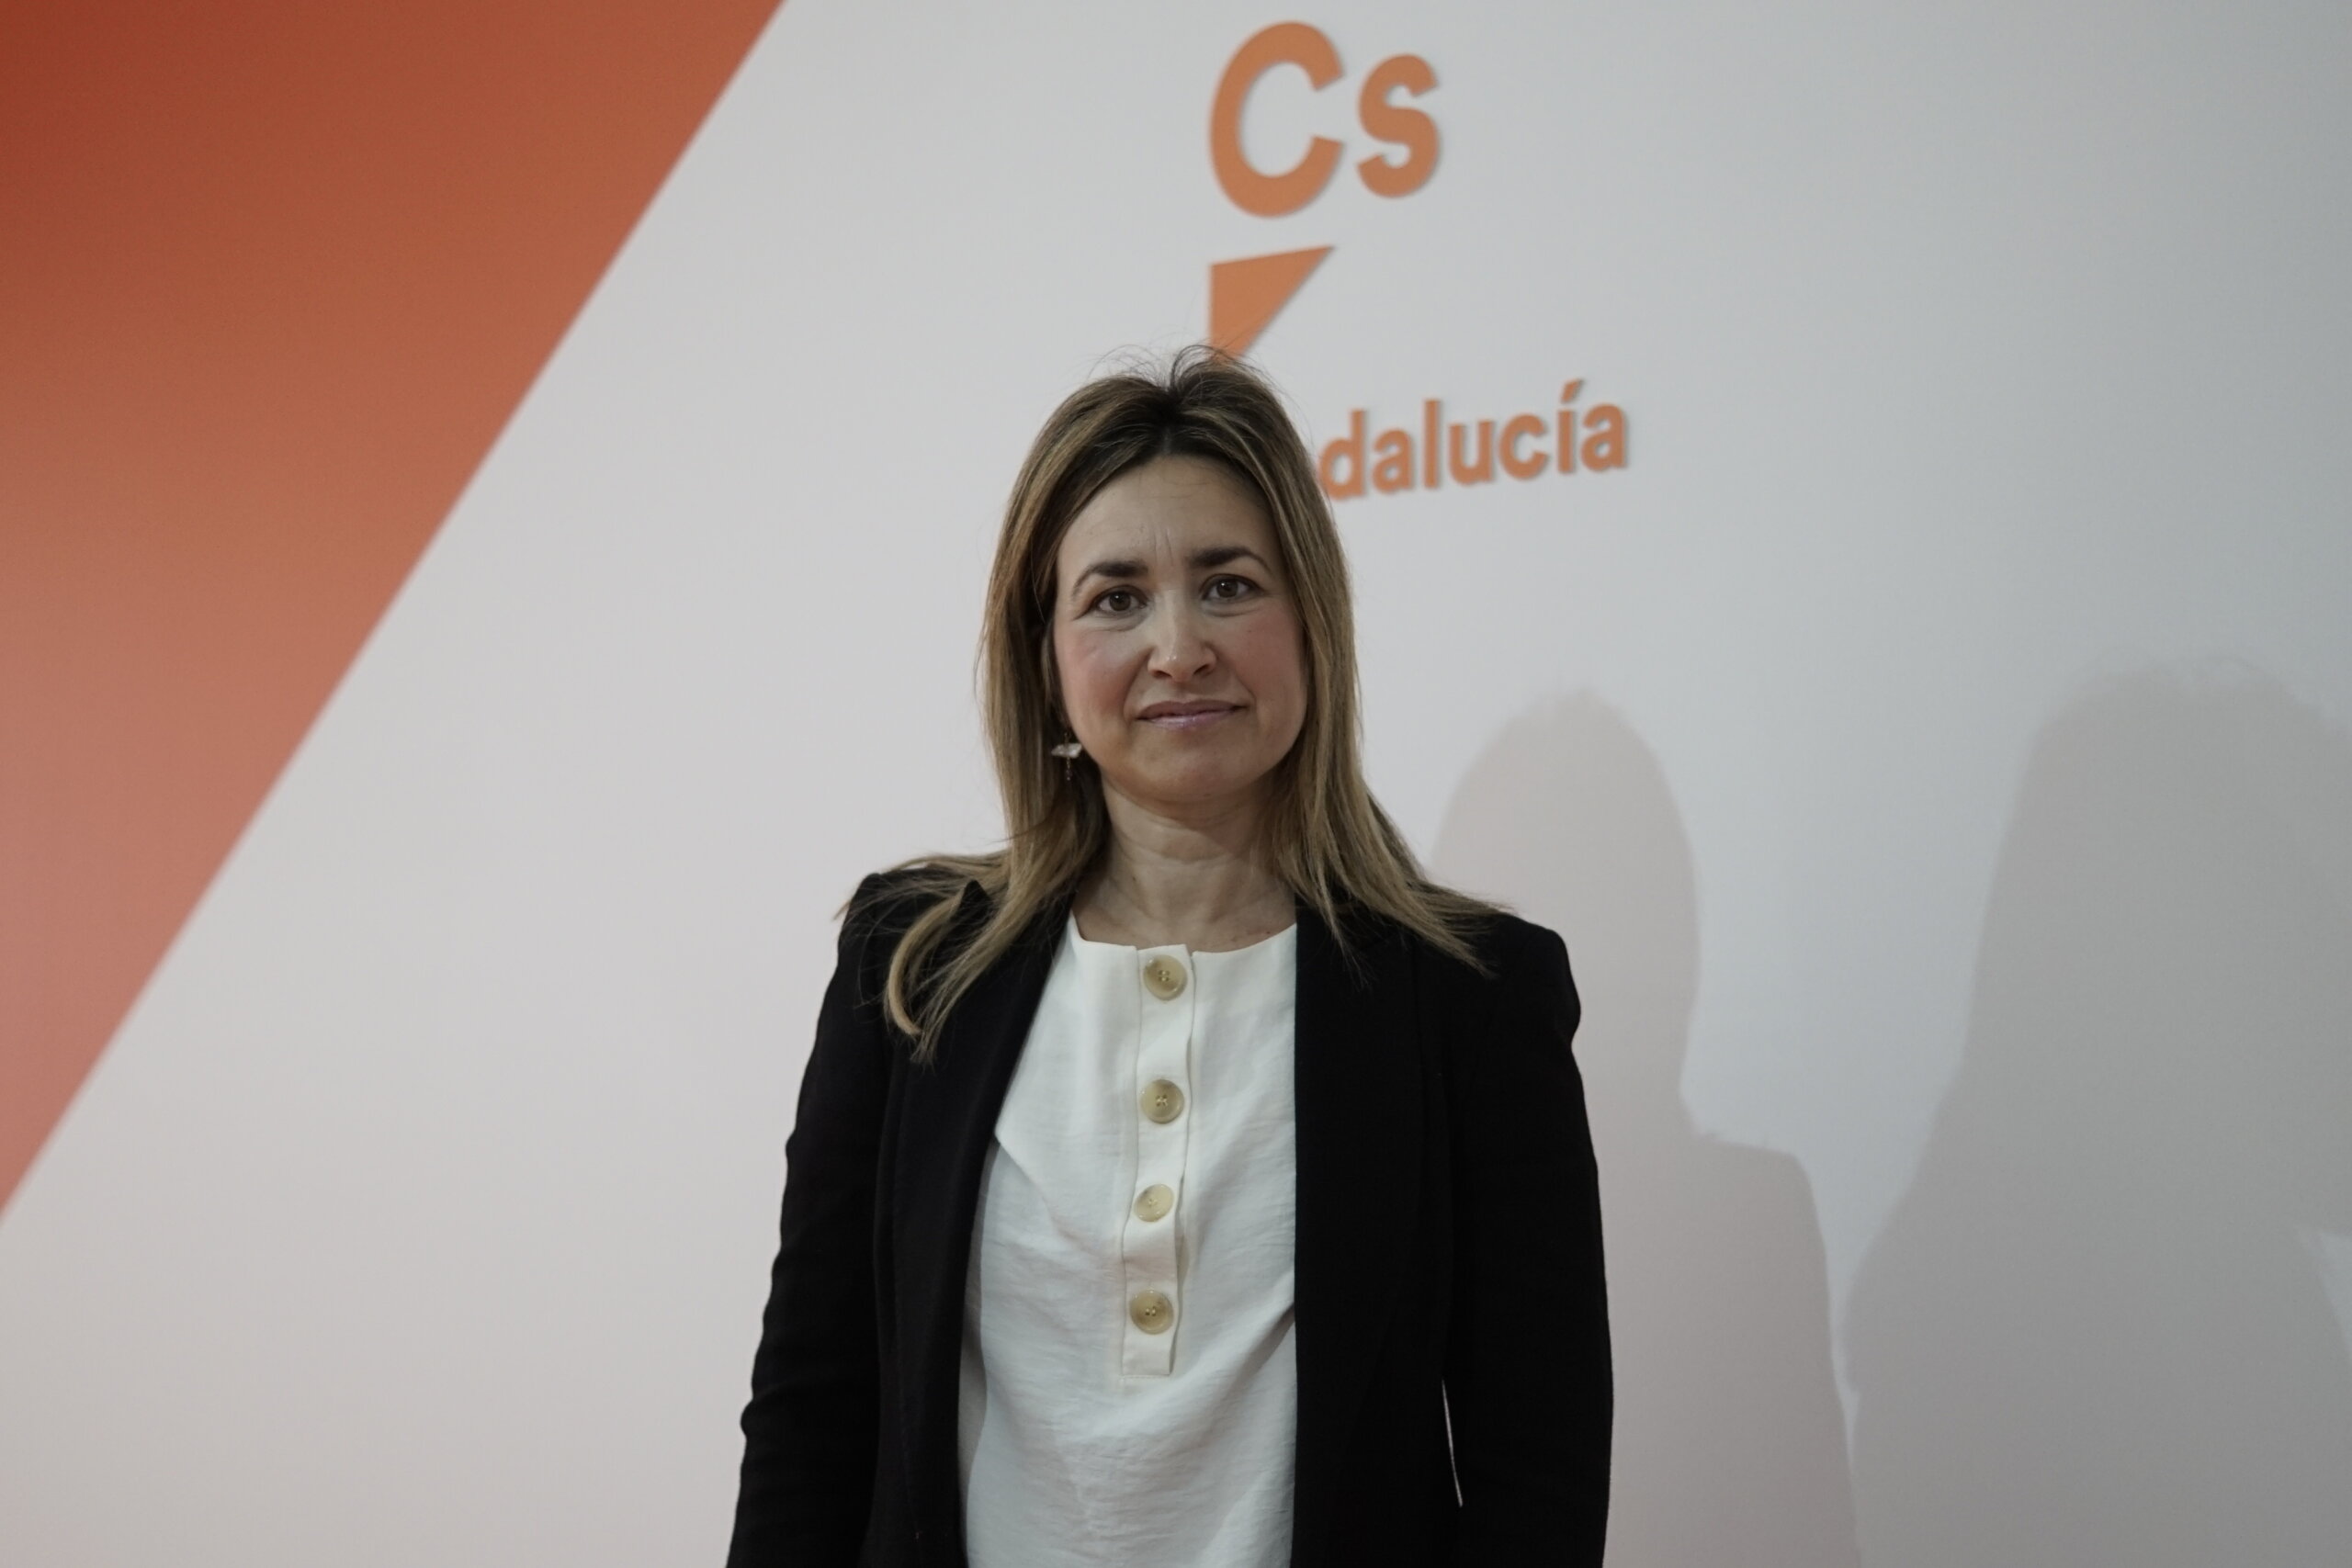 La portavoz de Ciudadanos Utrera es nombrada coordinadora de Cs en Sevilla